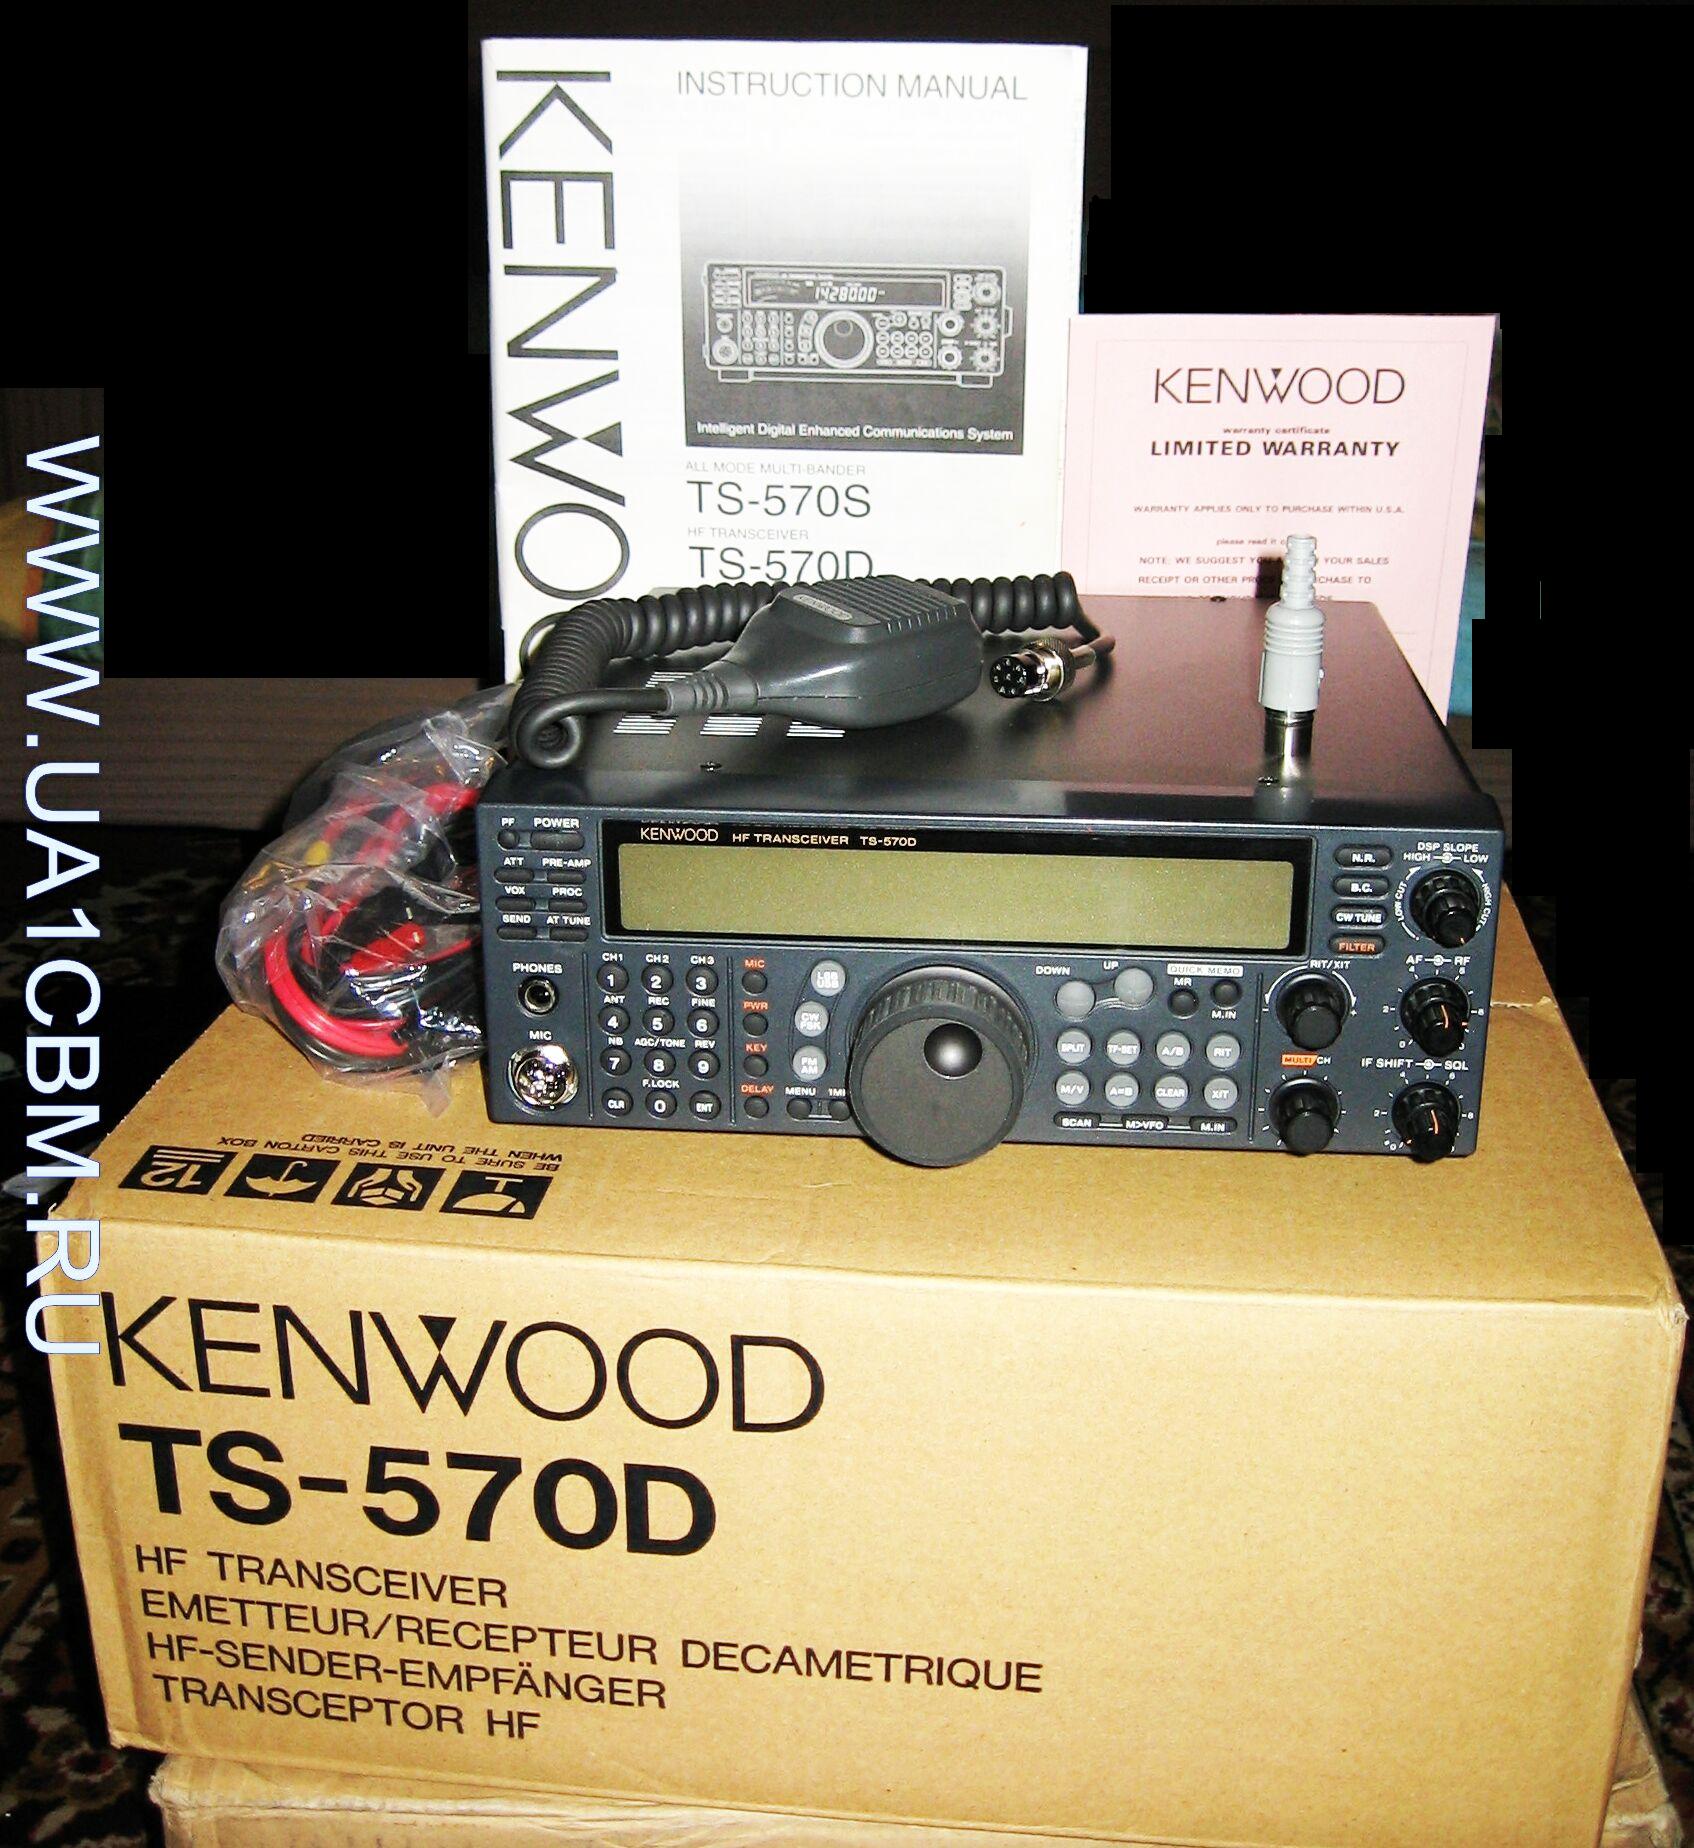 Kenwood TS-570DG